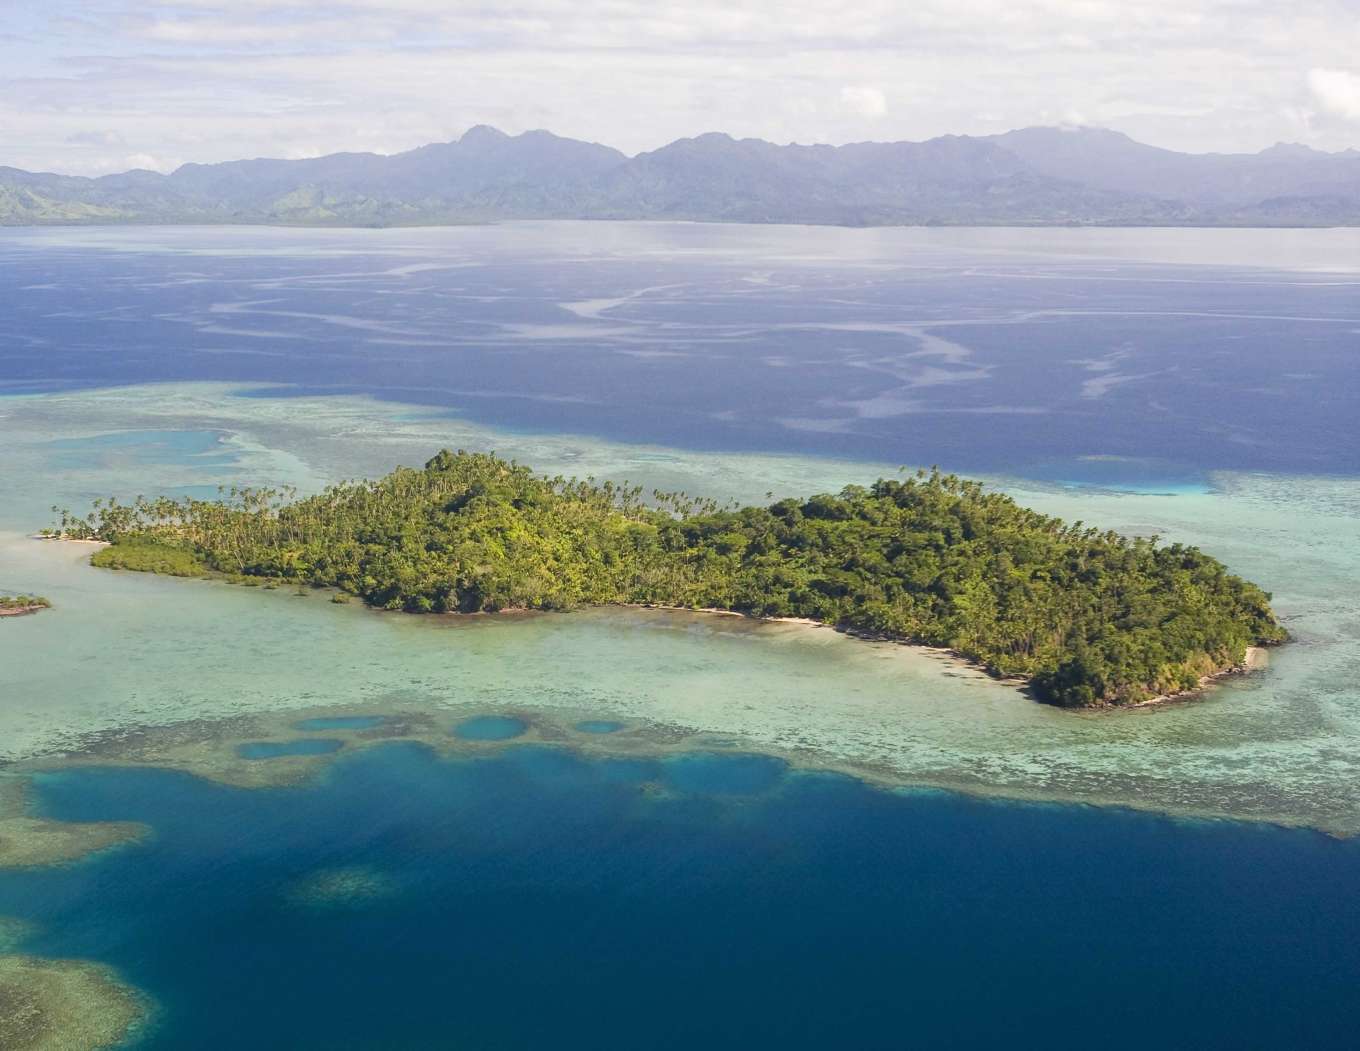 Южная часть тихого океана острова. Остров Нукудрау Фиджи. Остров Lovango cay. Вануа Леву Фиджи. Необитаемые острова Тихого океана.